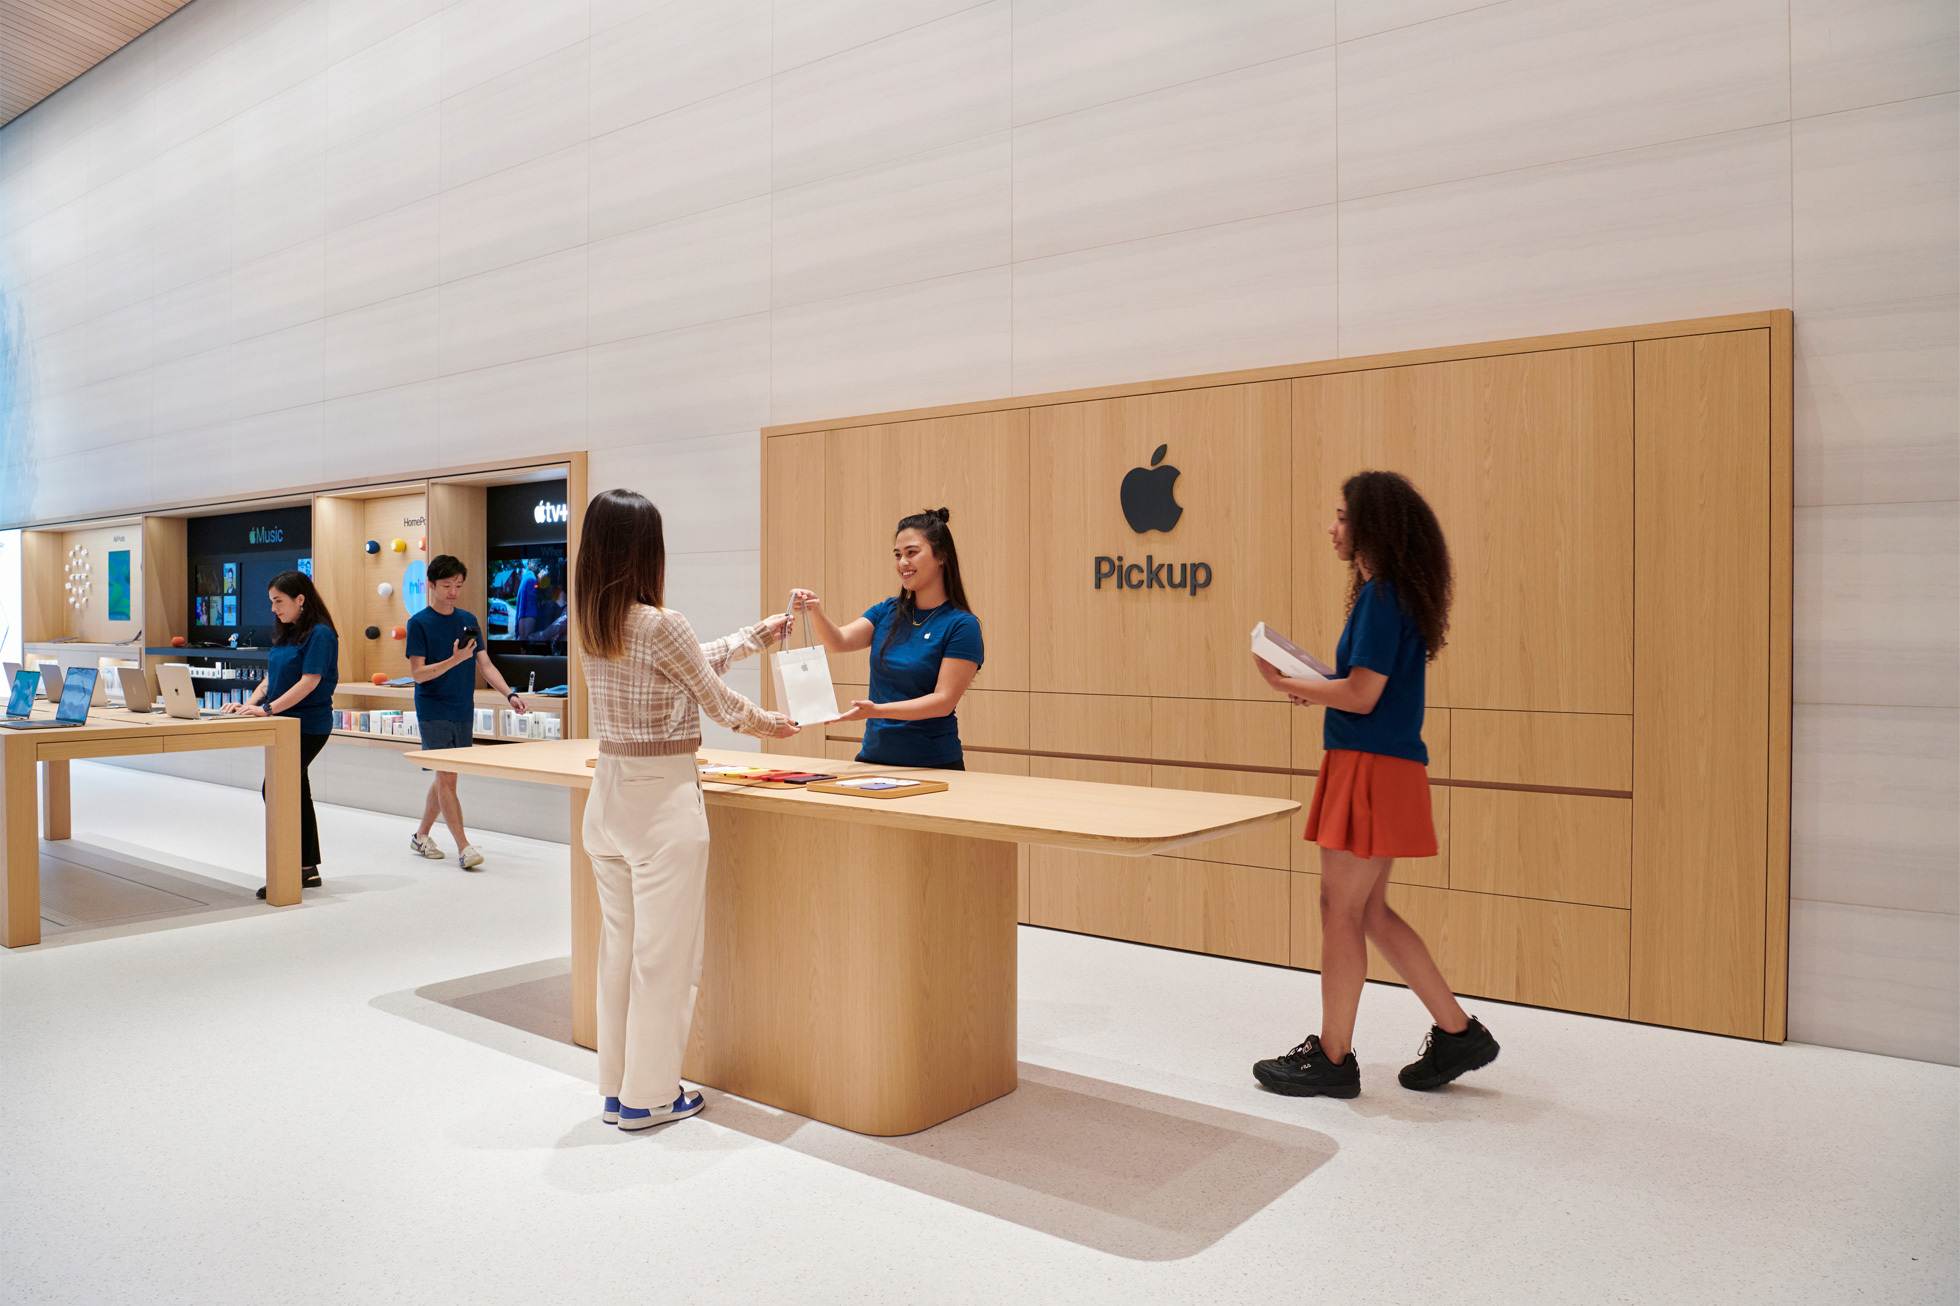 Новая зона выдачи Apple на Бромптон-роуд, где люди за столом получают новые продукты Apple